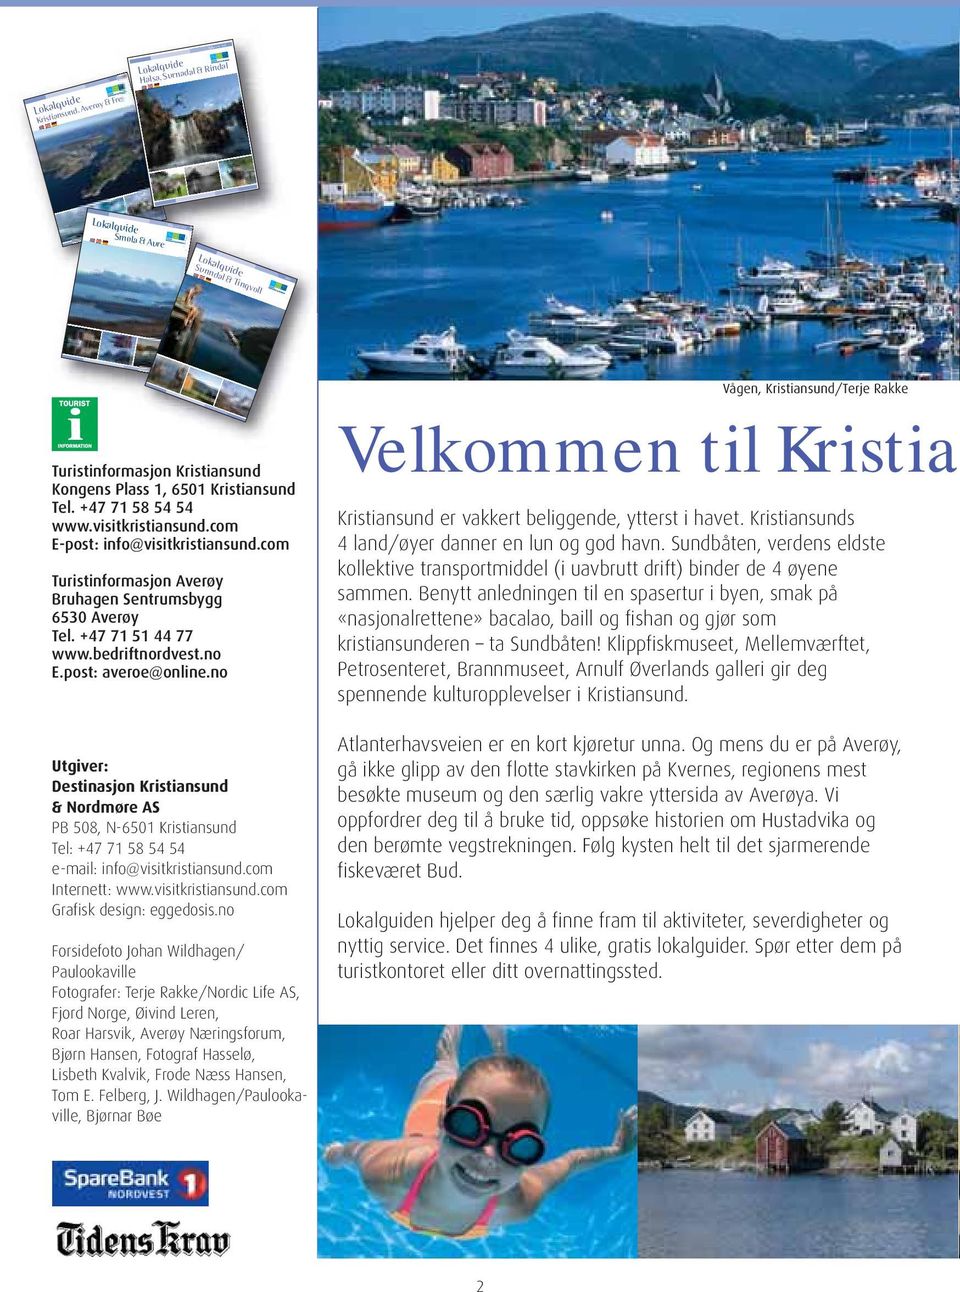 +47 71 51 44 77 www.bedriftnordvest.no E.post: averoe@online.no Utgiver: Destinasjon Kristiansund & Nordmøre AS PB 508, N-6501 Kristiansund Tel: +47 71 58 54 54 e-mail: info@visitkristiansund.